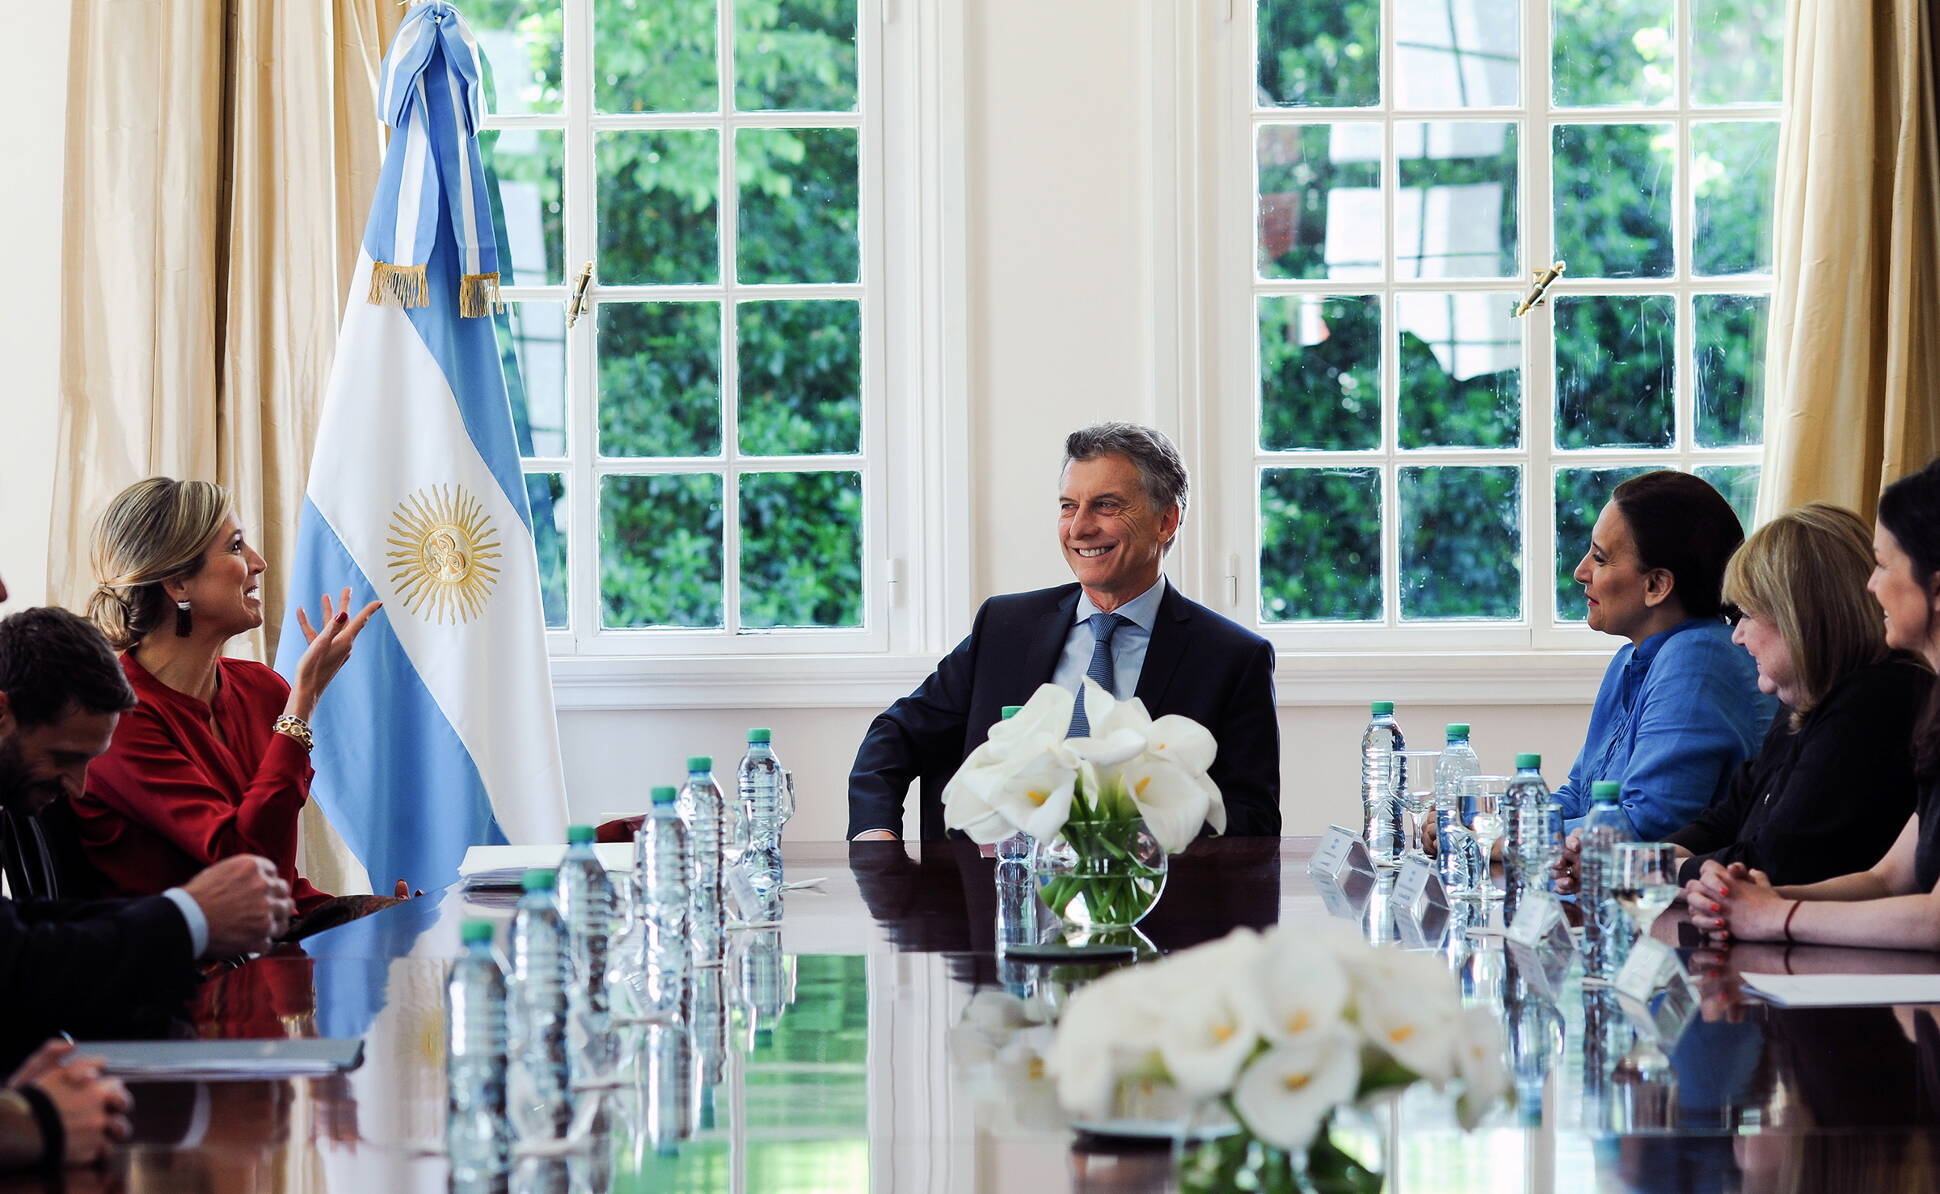  El presidente Mauricio Macri recibió a la reina Máxima de Holanda